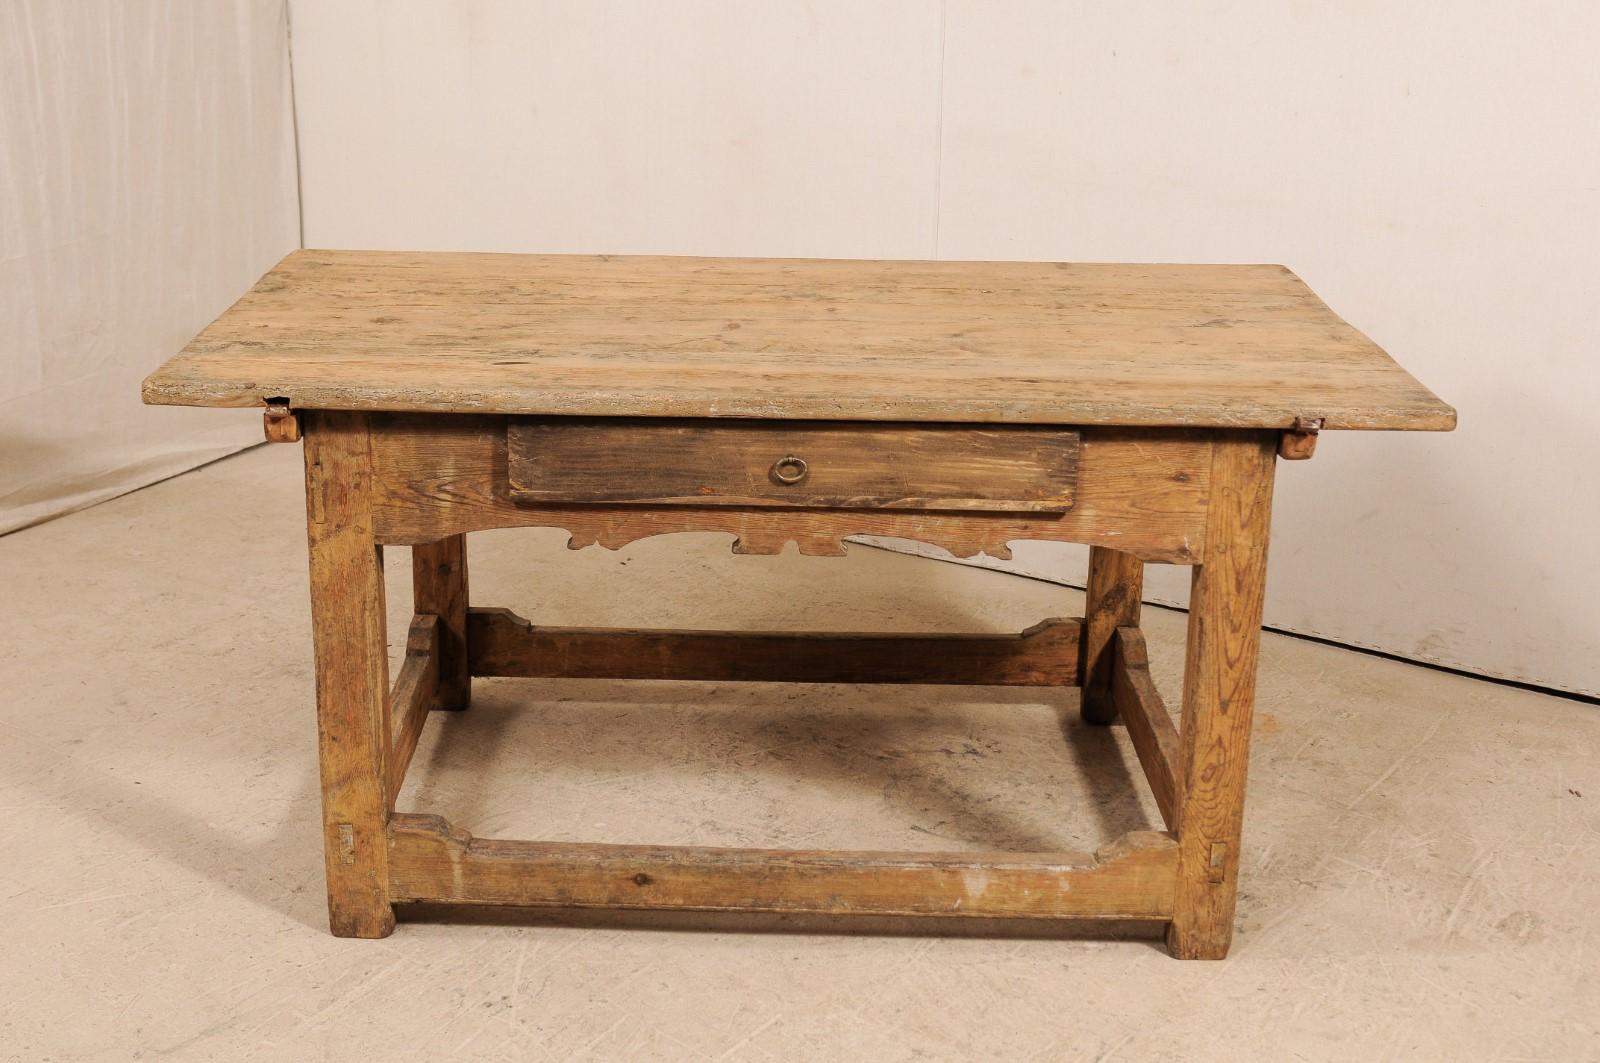 Ein schwedischer Schreibtisch mit Schiebeplatte aus dem frühen 19. Jahrhundert. Dieser antike Tisch aus Schweden hat eine ausladende, rechteckige Platte über einer dekorativ geschnitzten Schürze, in der sich eine einzelne Schublade befindet. Der